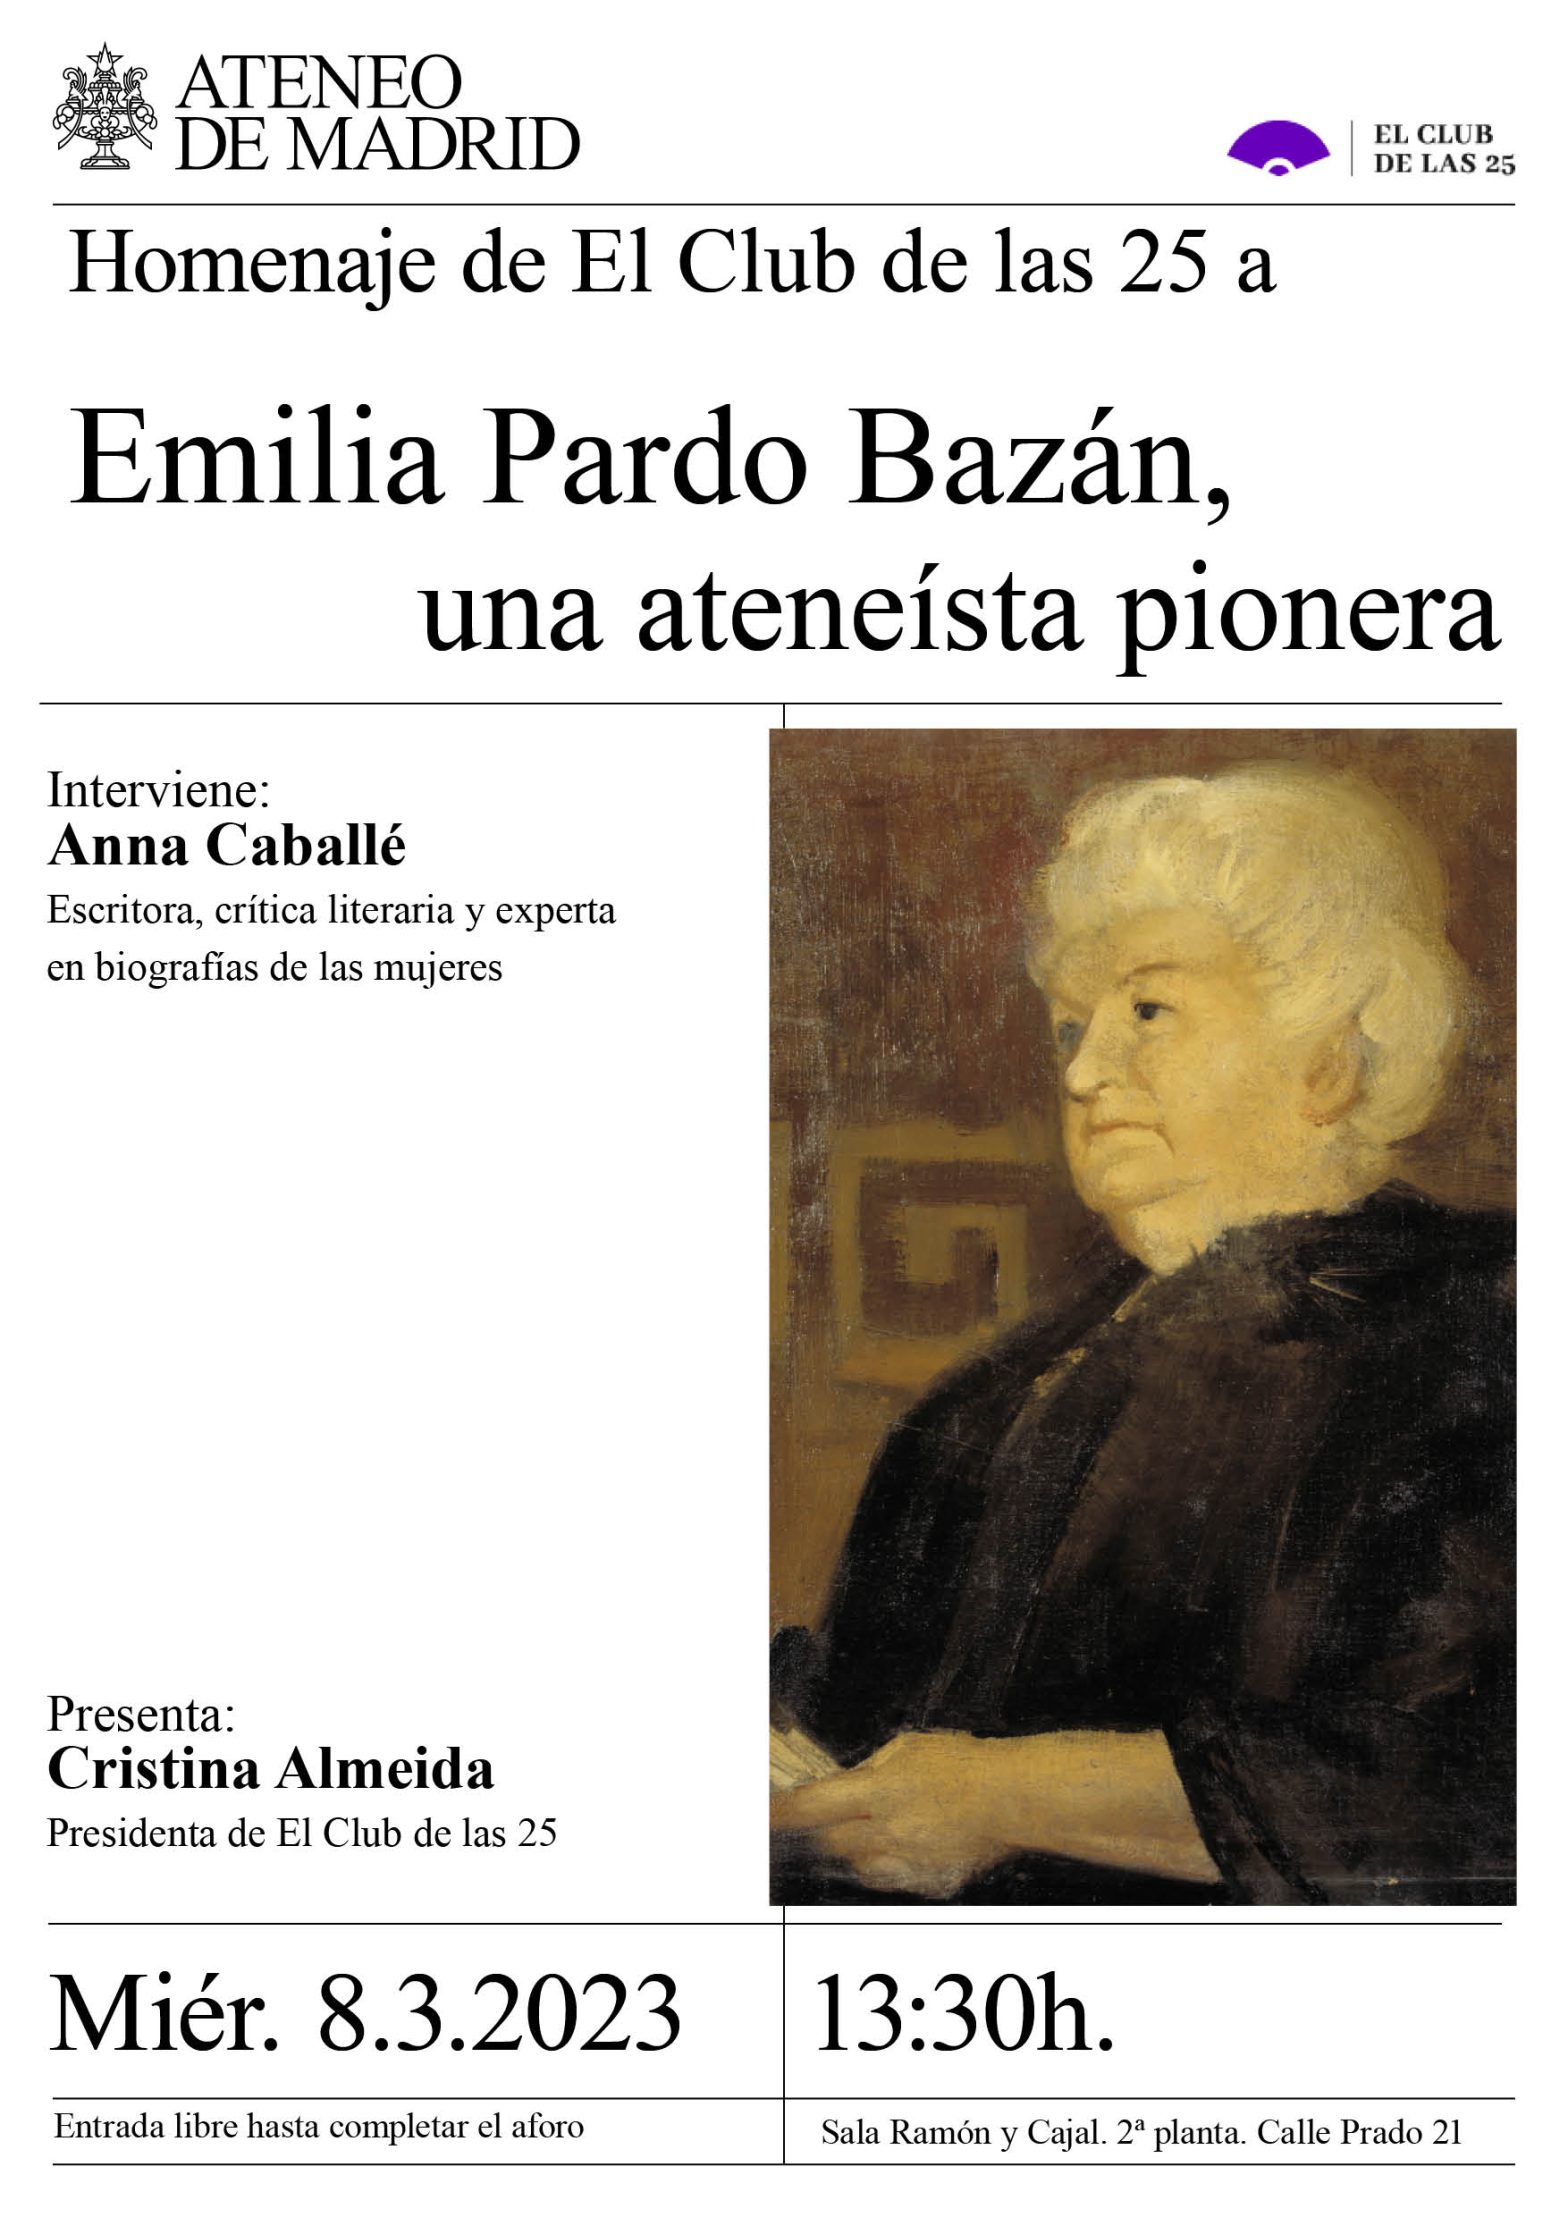 Homenaje del Club de las 25 a Emilia Pardo Bazán, una ateneísta pionera -  Ateneo Madrid